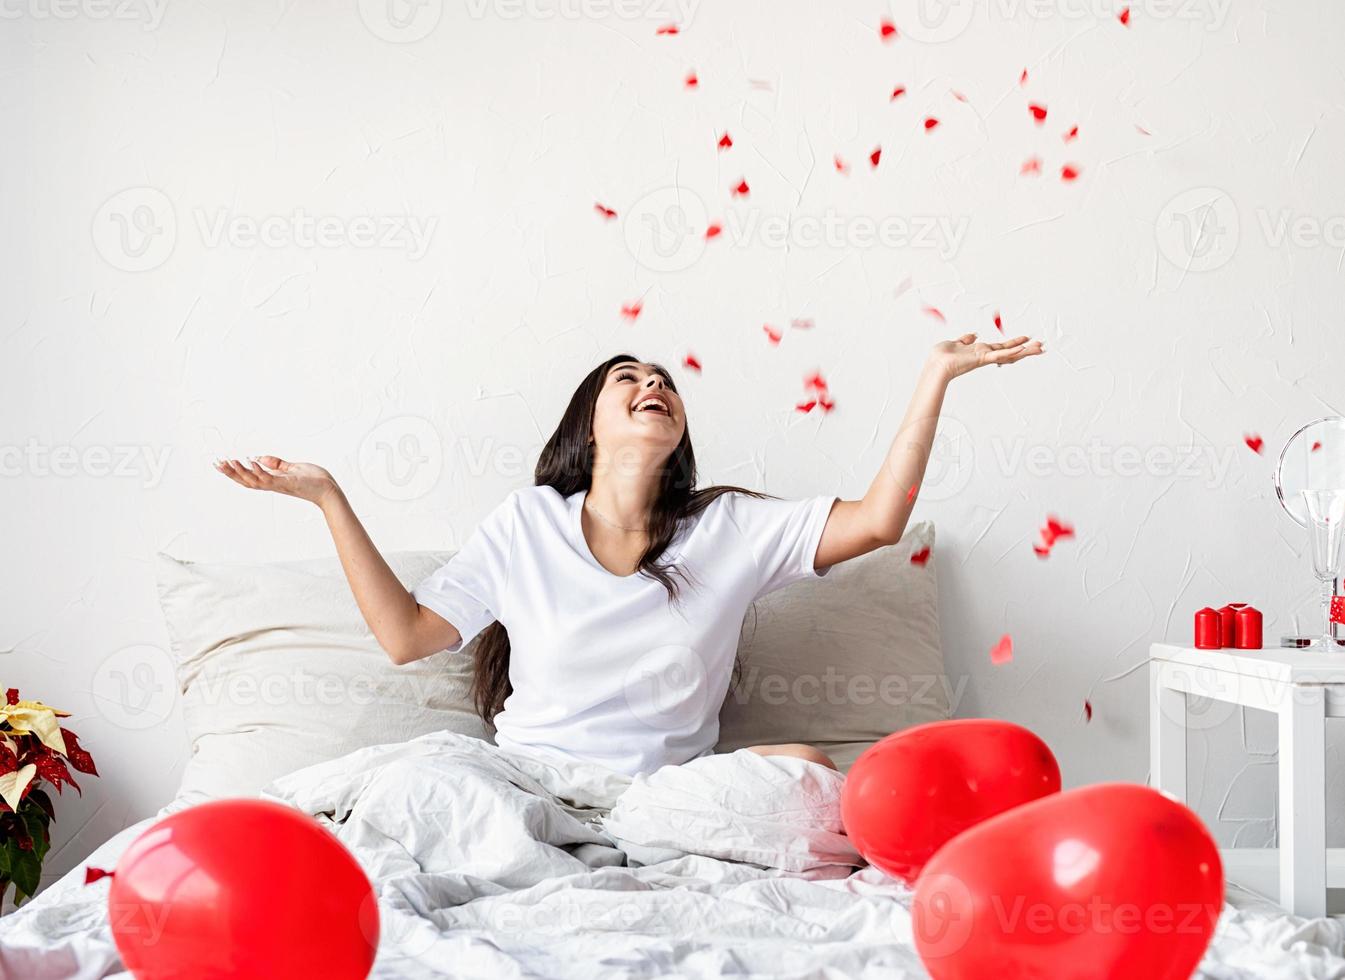 Jeune femme brune heureuse assise dans le lit avec des ballons en forme de coeur rouge jetant des confettis en l'air photo